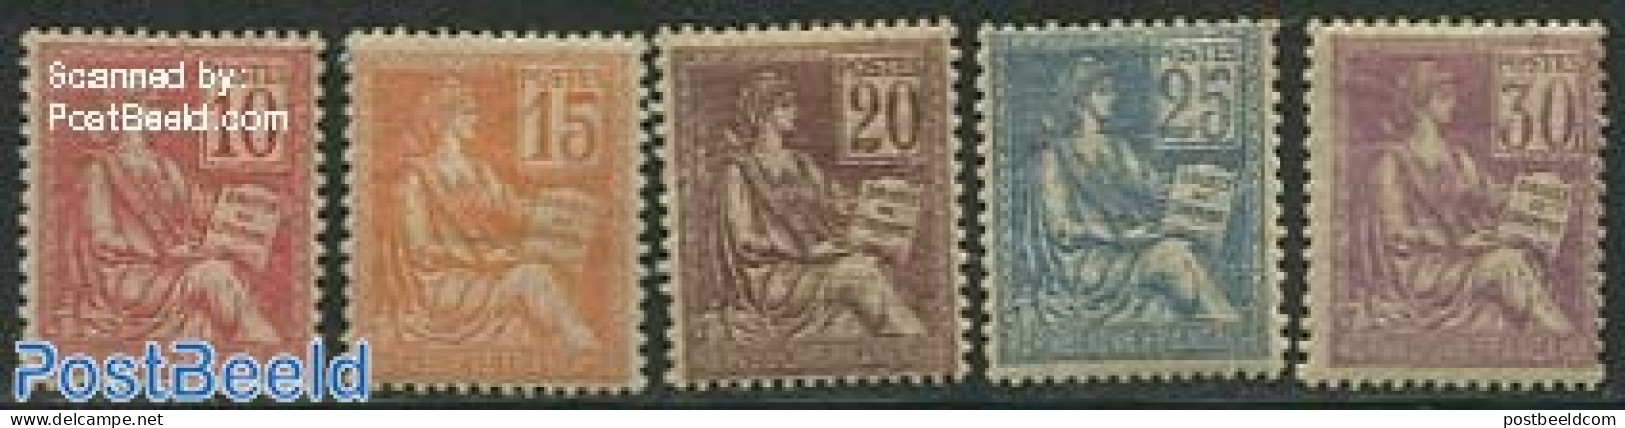 France 1900 Definitives 5v, Mint NH - Nuovi